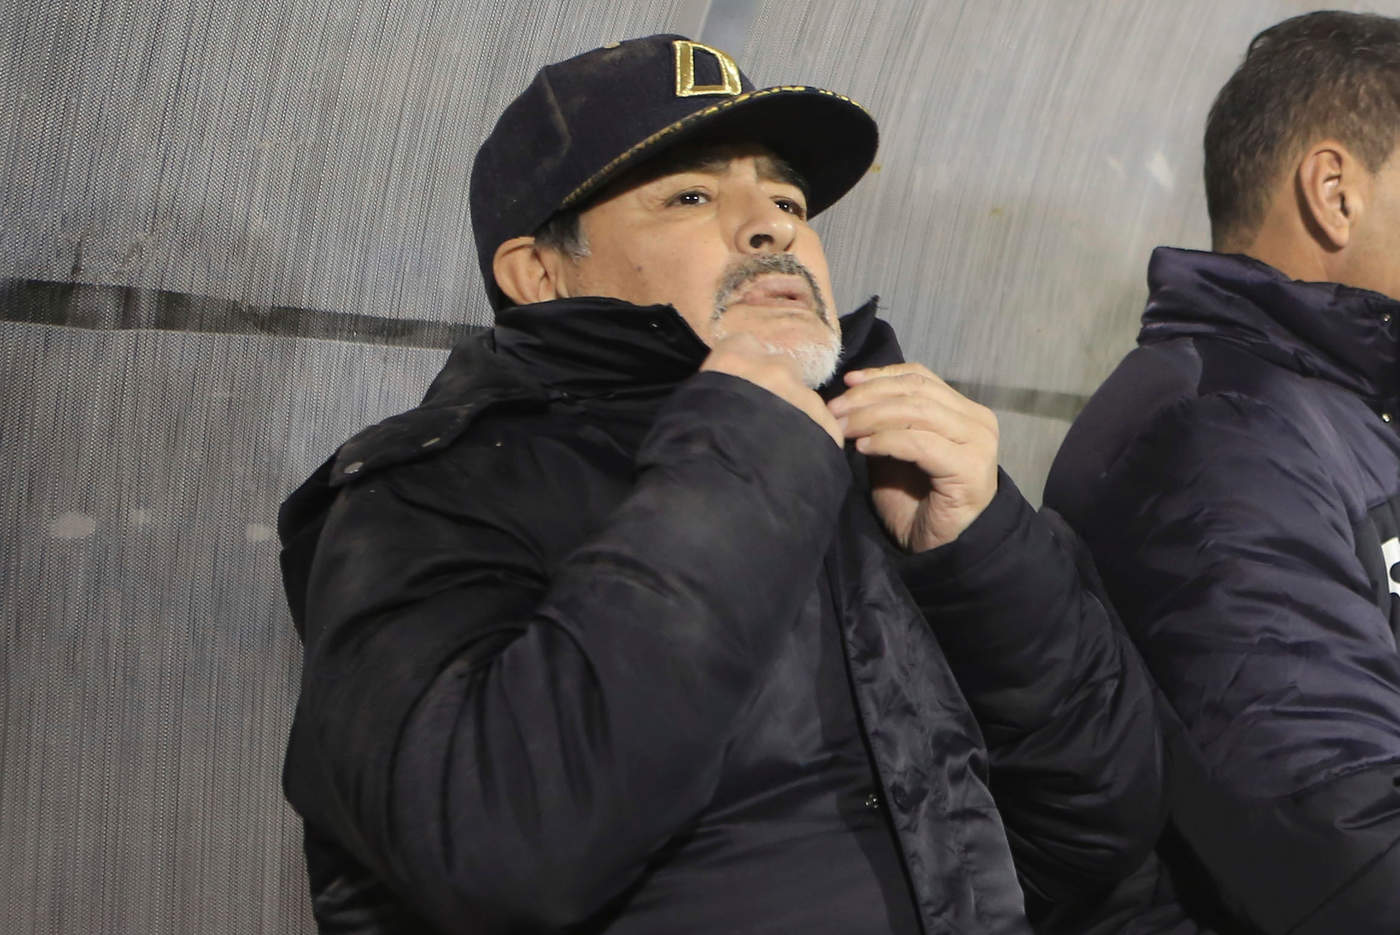 El equipo de Dorados de Sinaloa, del Ascenso MX, informó que su director técnico se encuentra en Argentina arreglando asuntos personales.